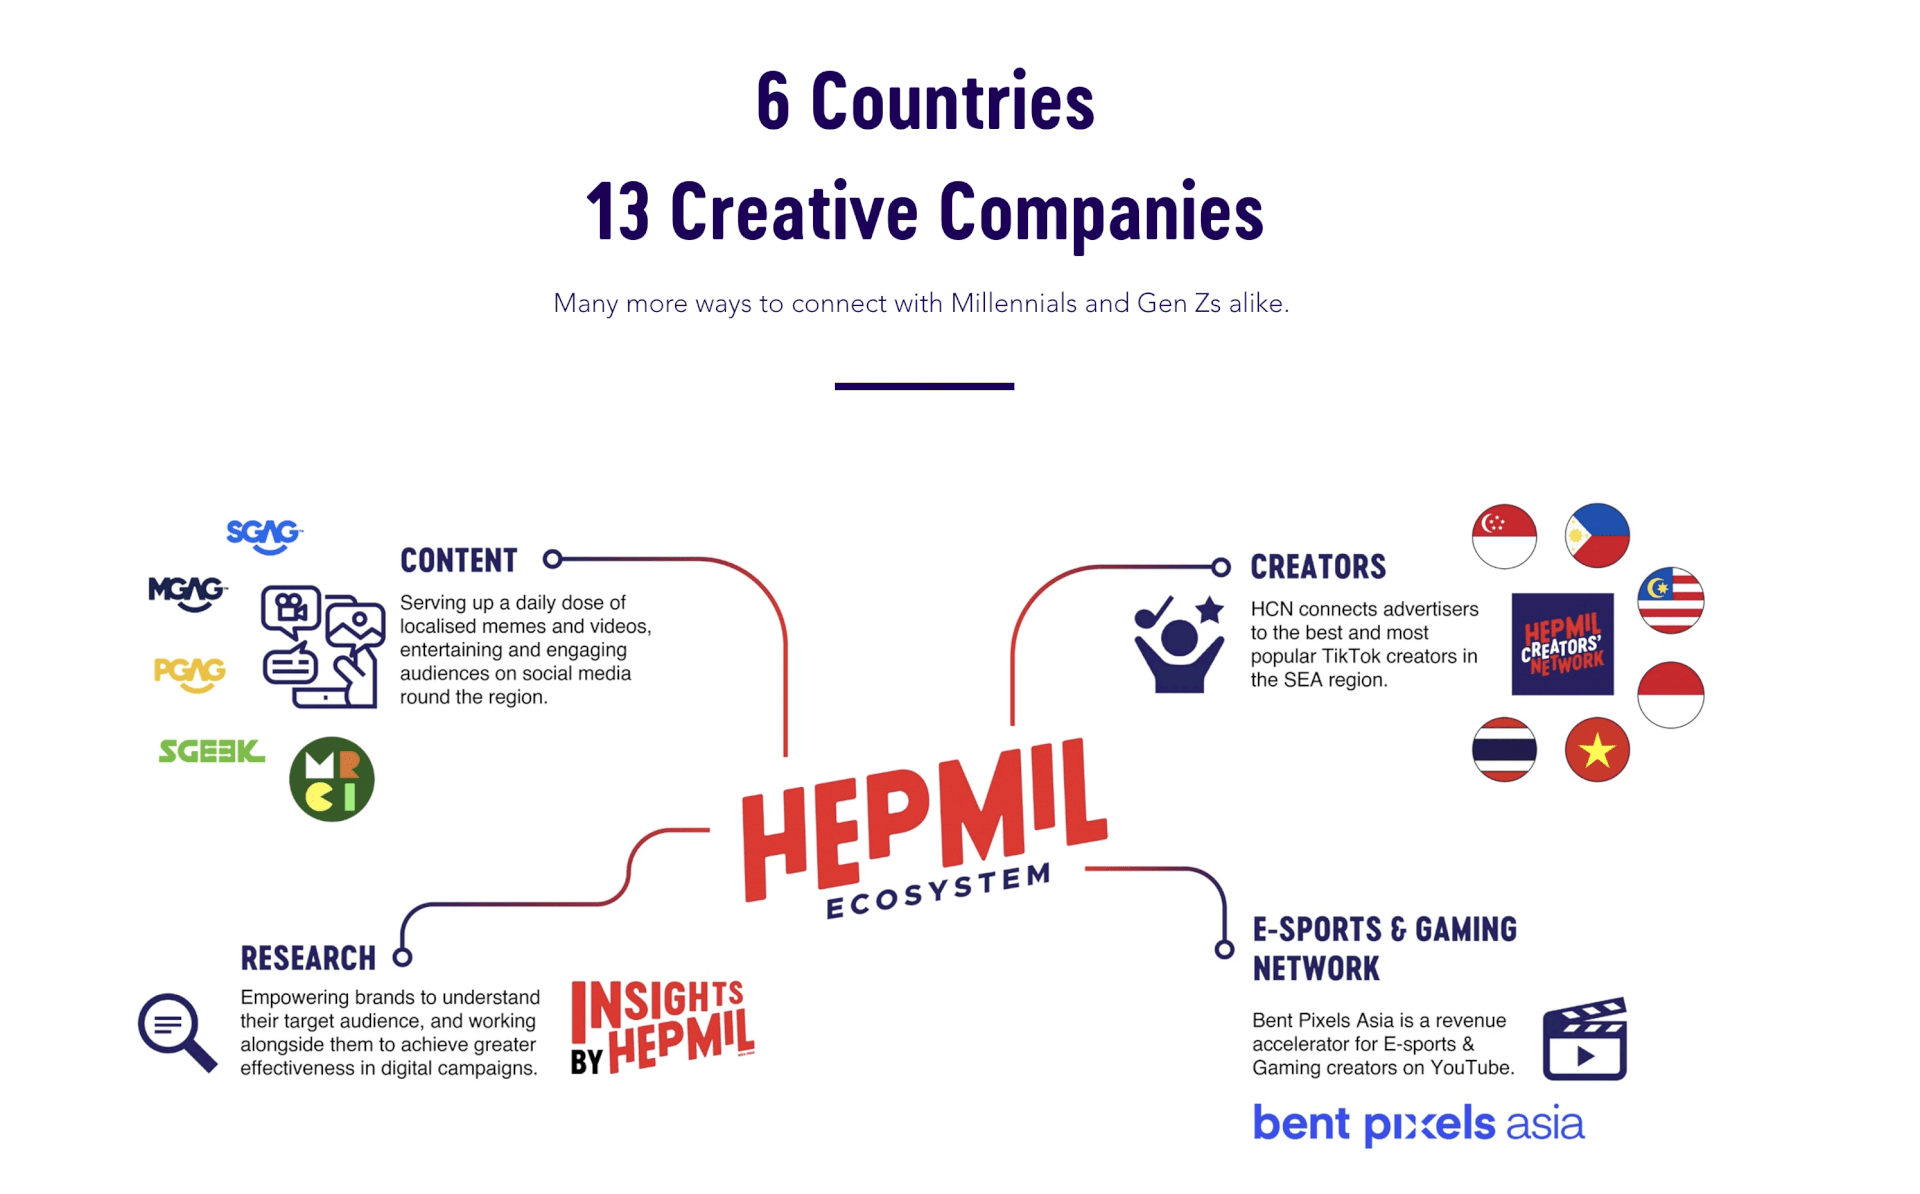 Hepmil Media Group